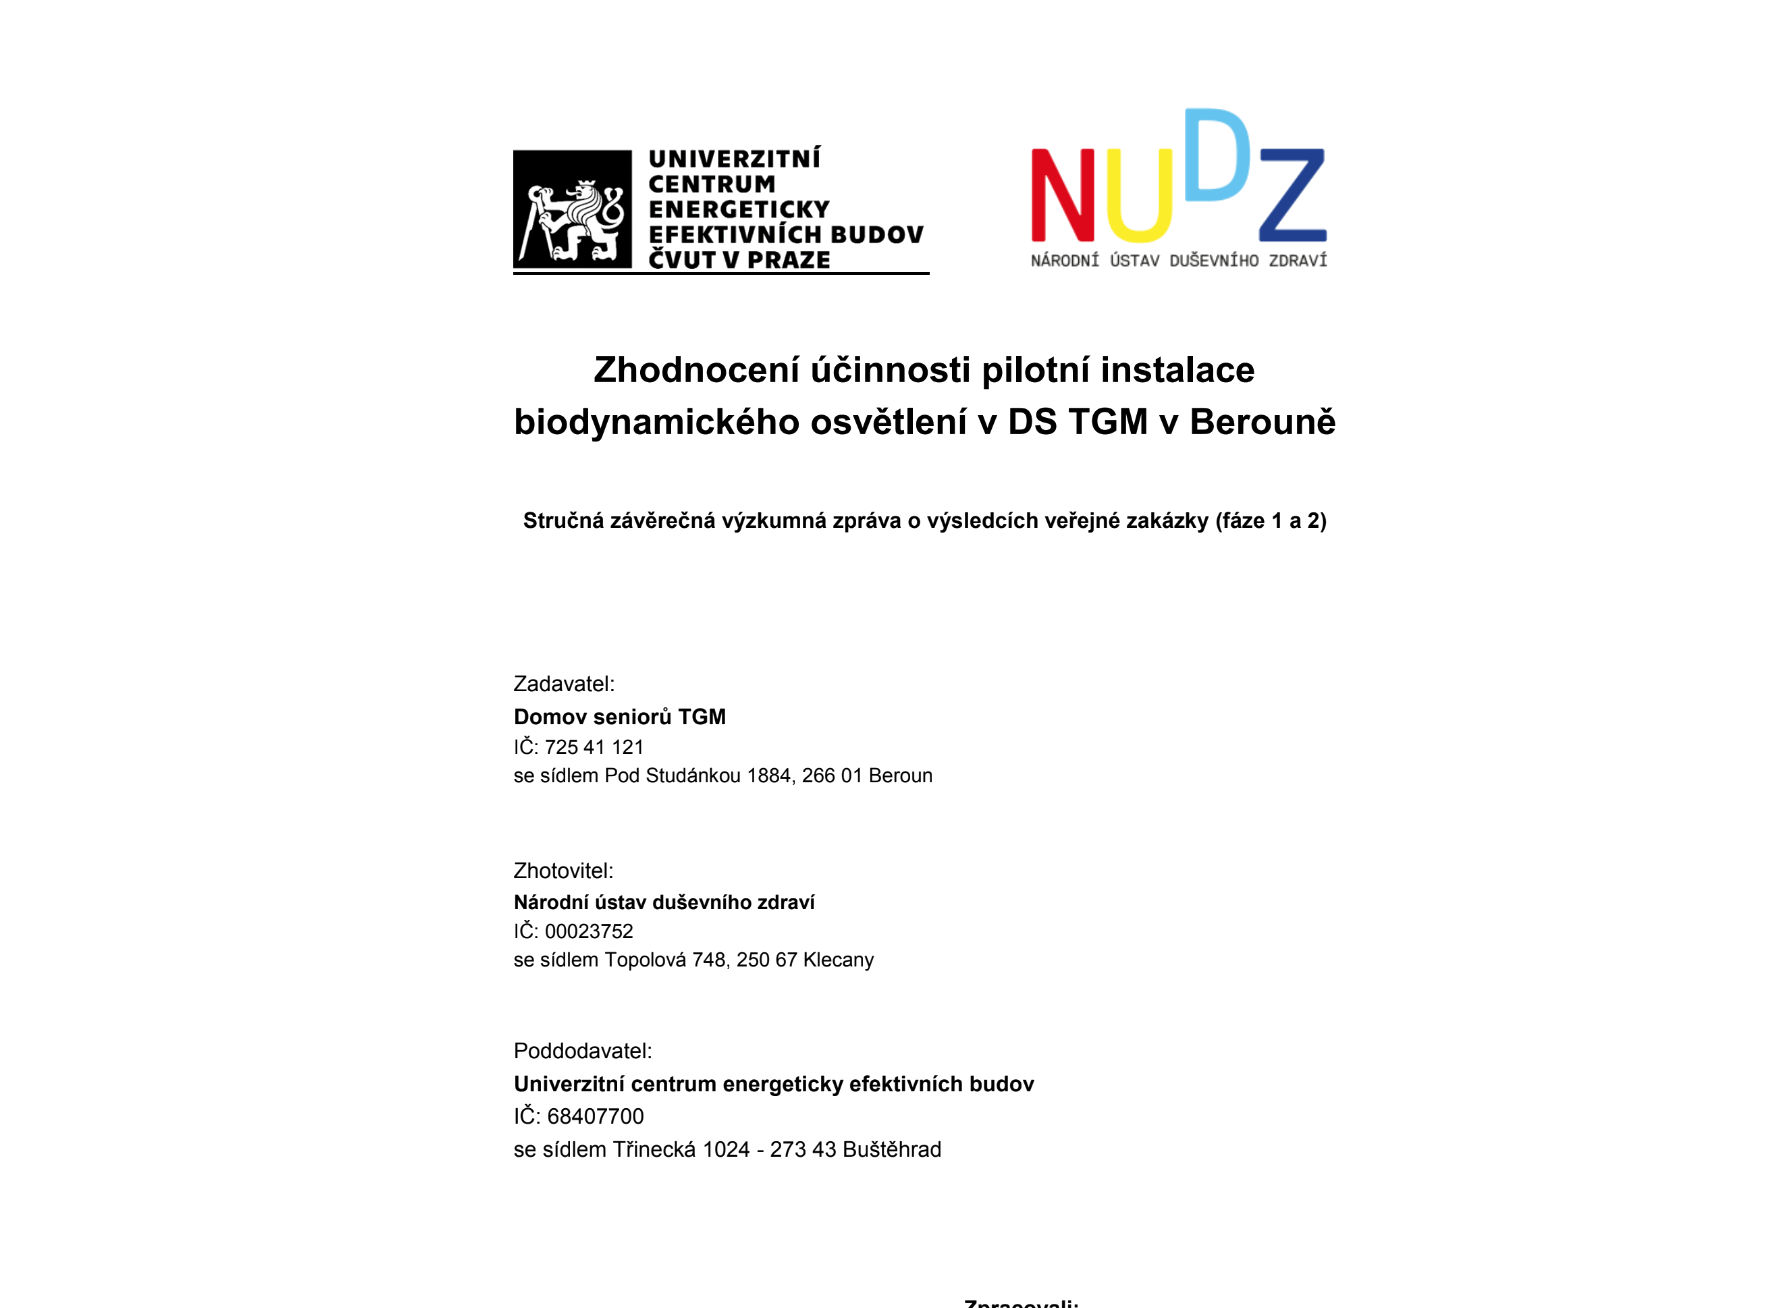 Zhodnocení účinnosti pilotní instalace biodynamického osvětlení v DS TGM v Berouně